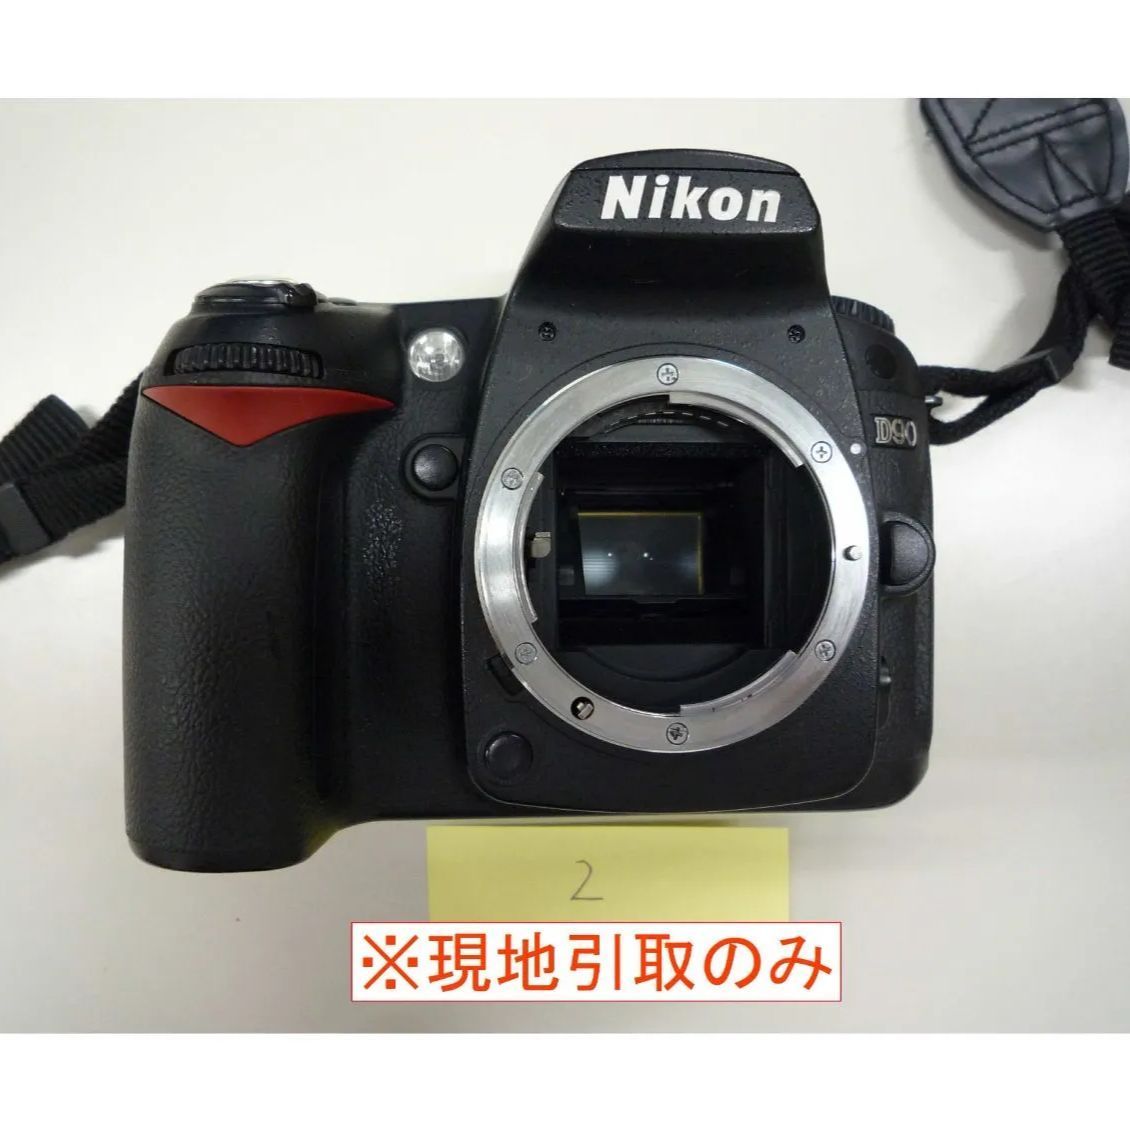 ジャンク品、現地引取のみ】Nikon デジタル一眼レフカメラ D90(2 ...